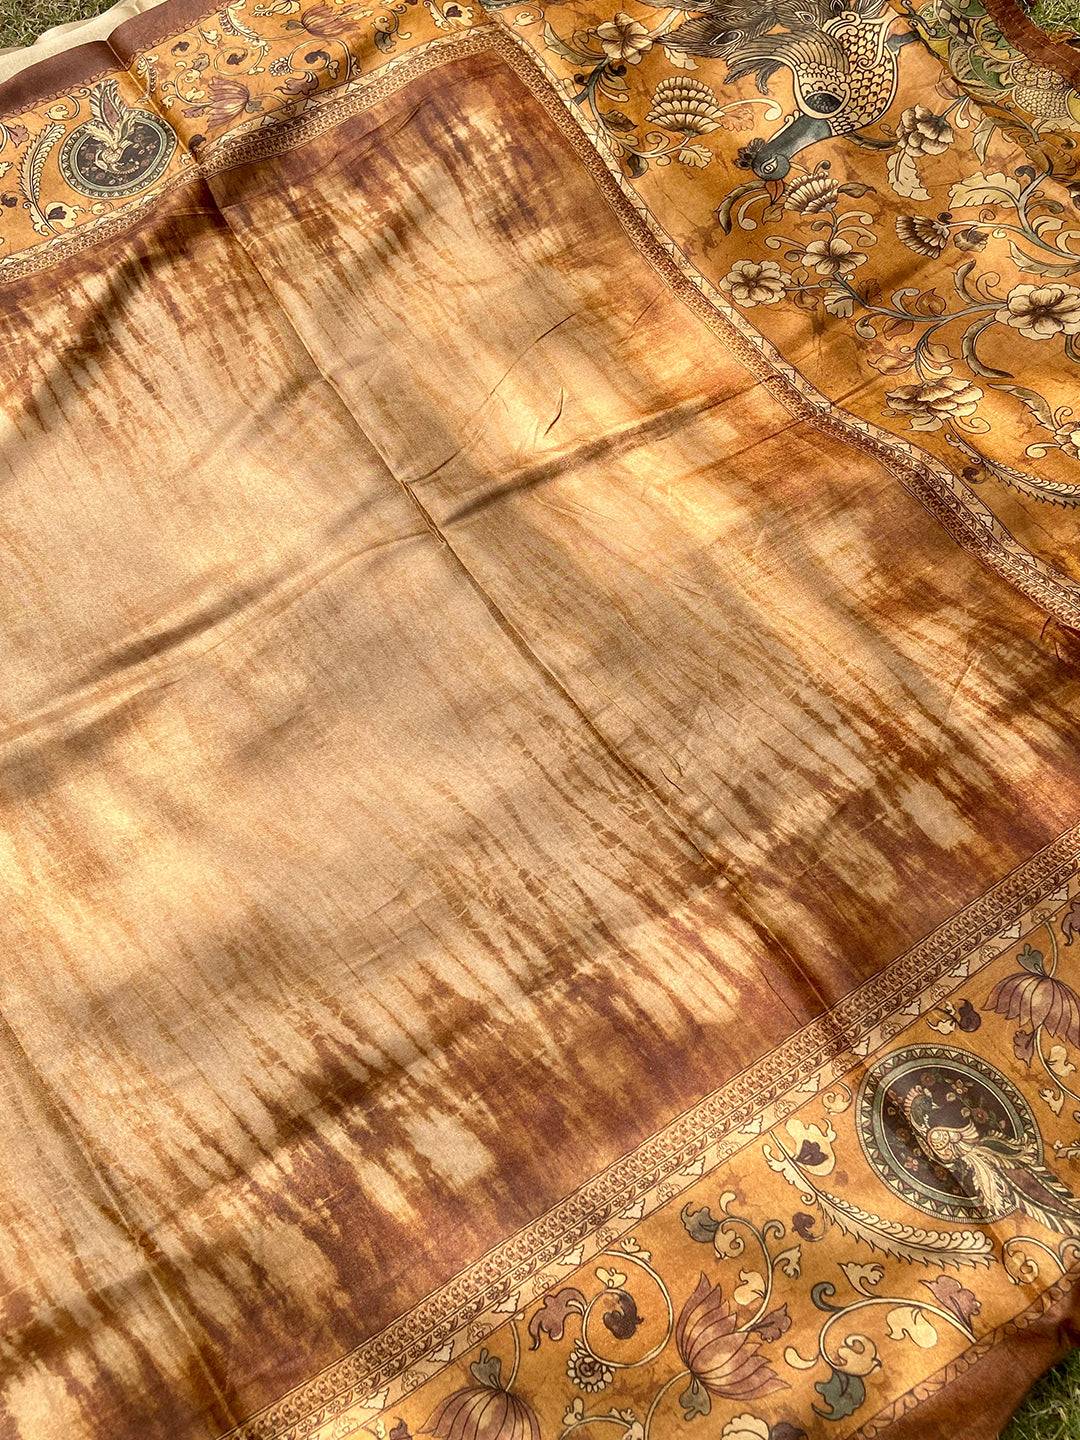 Gold Colour Tussar Silk Saree With Batik and Kalamkari Print Border